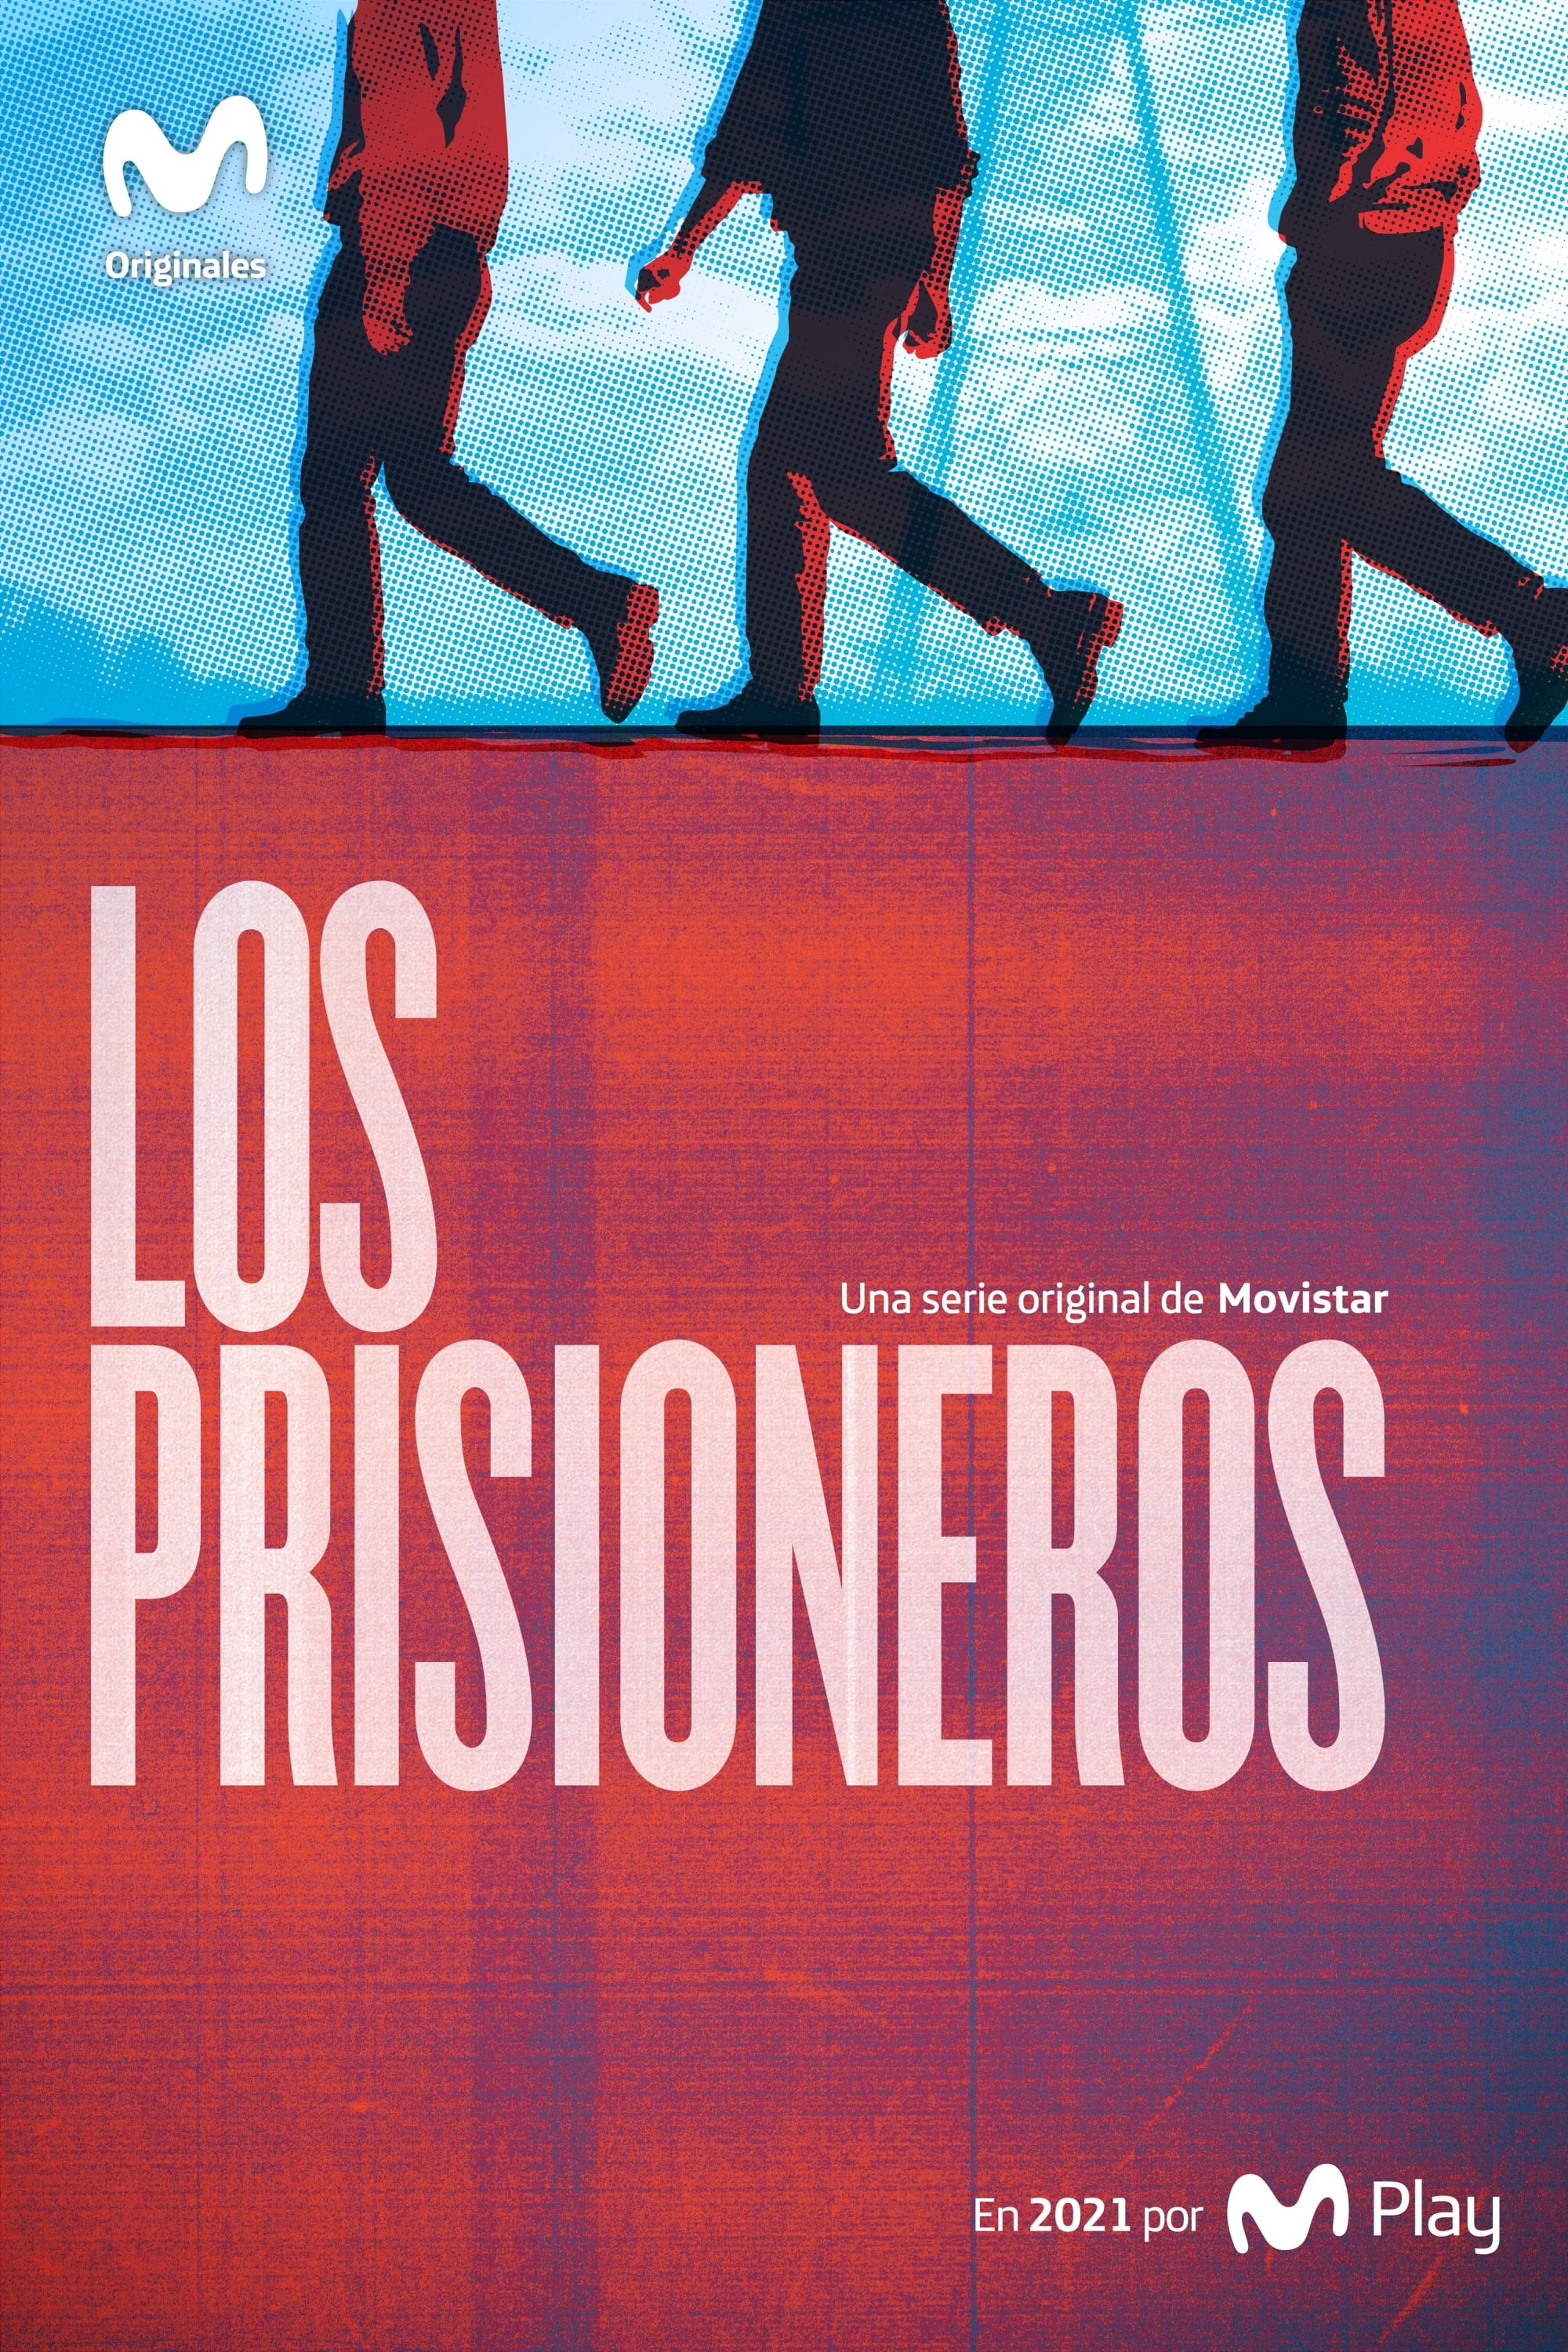 Los Prisioneros TV Shows About 1980s